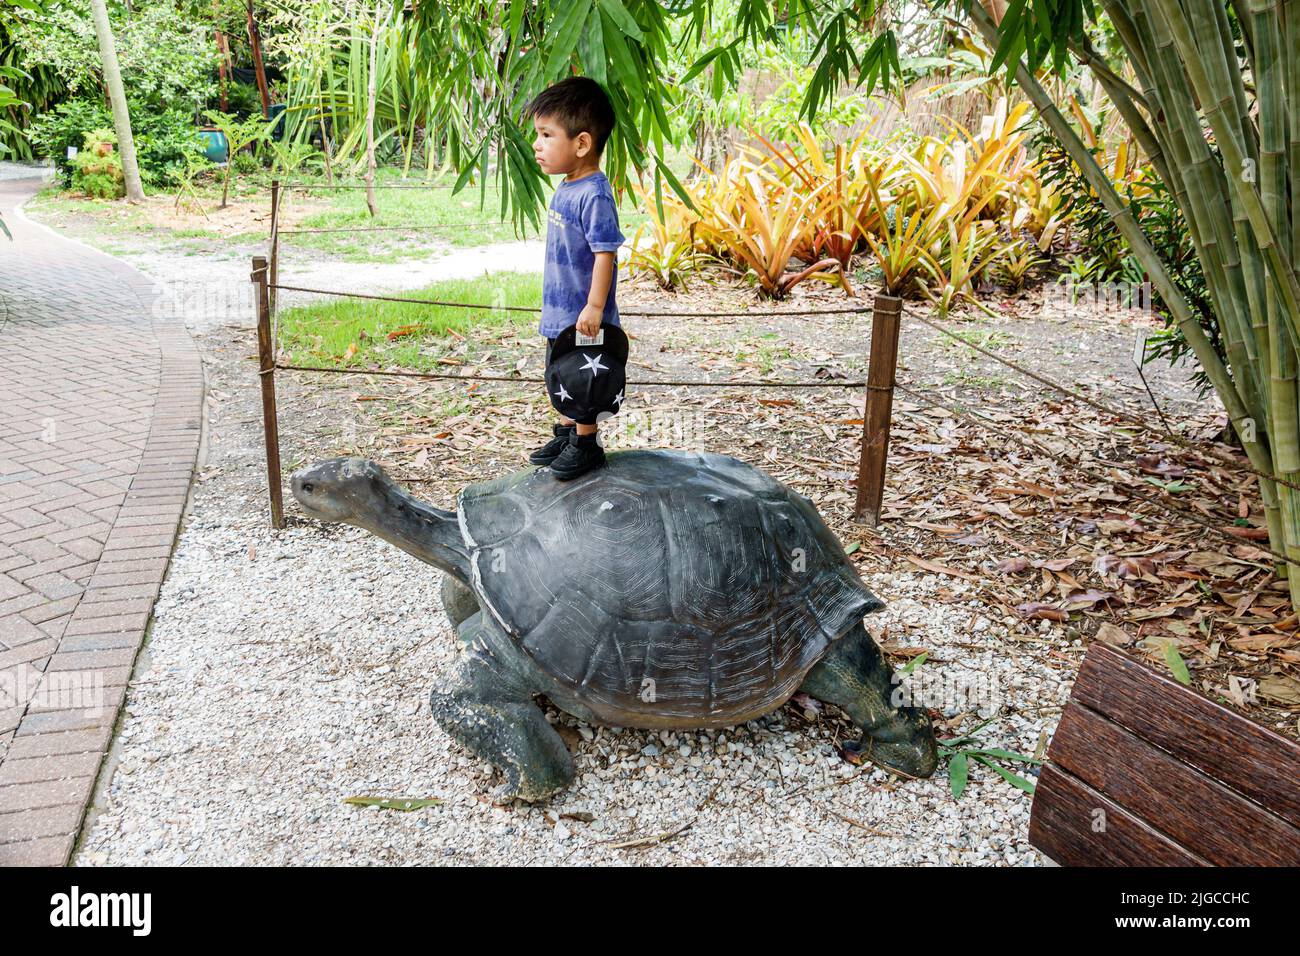 Bonita Springs Florida, Everglades Wonder Gardens, refugio de jardín botánico, fauna lesionada exposiciones atracción turística, estatua de tortugas gigantes Foto de stock